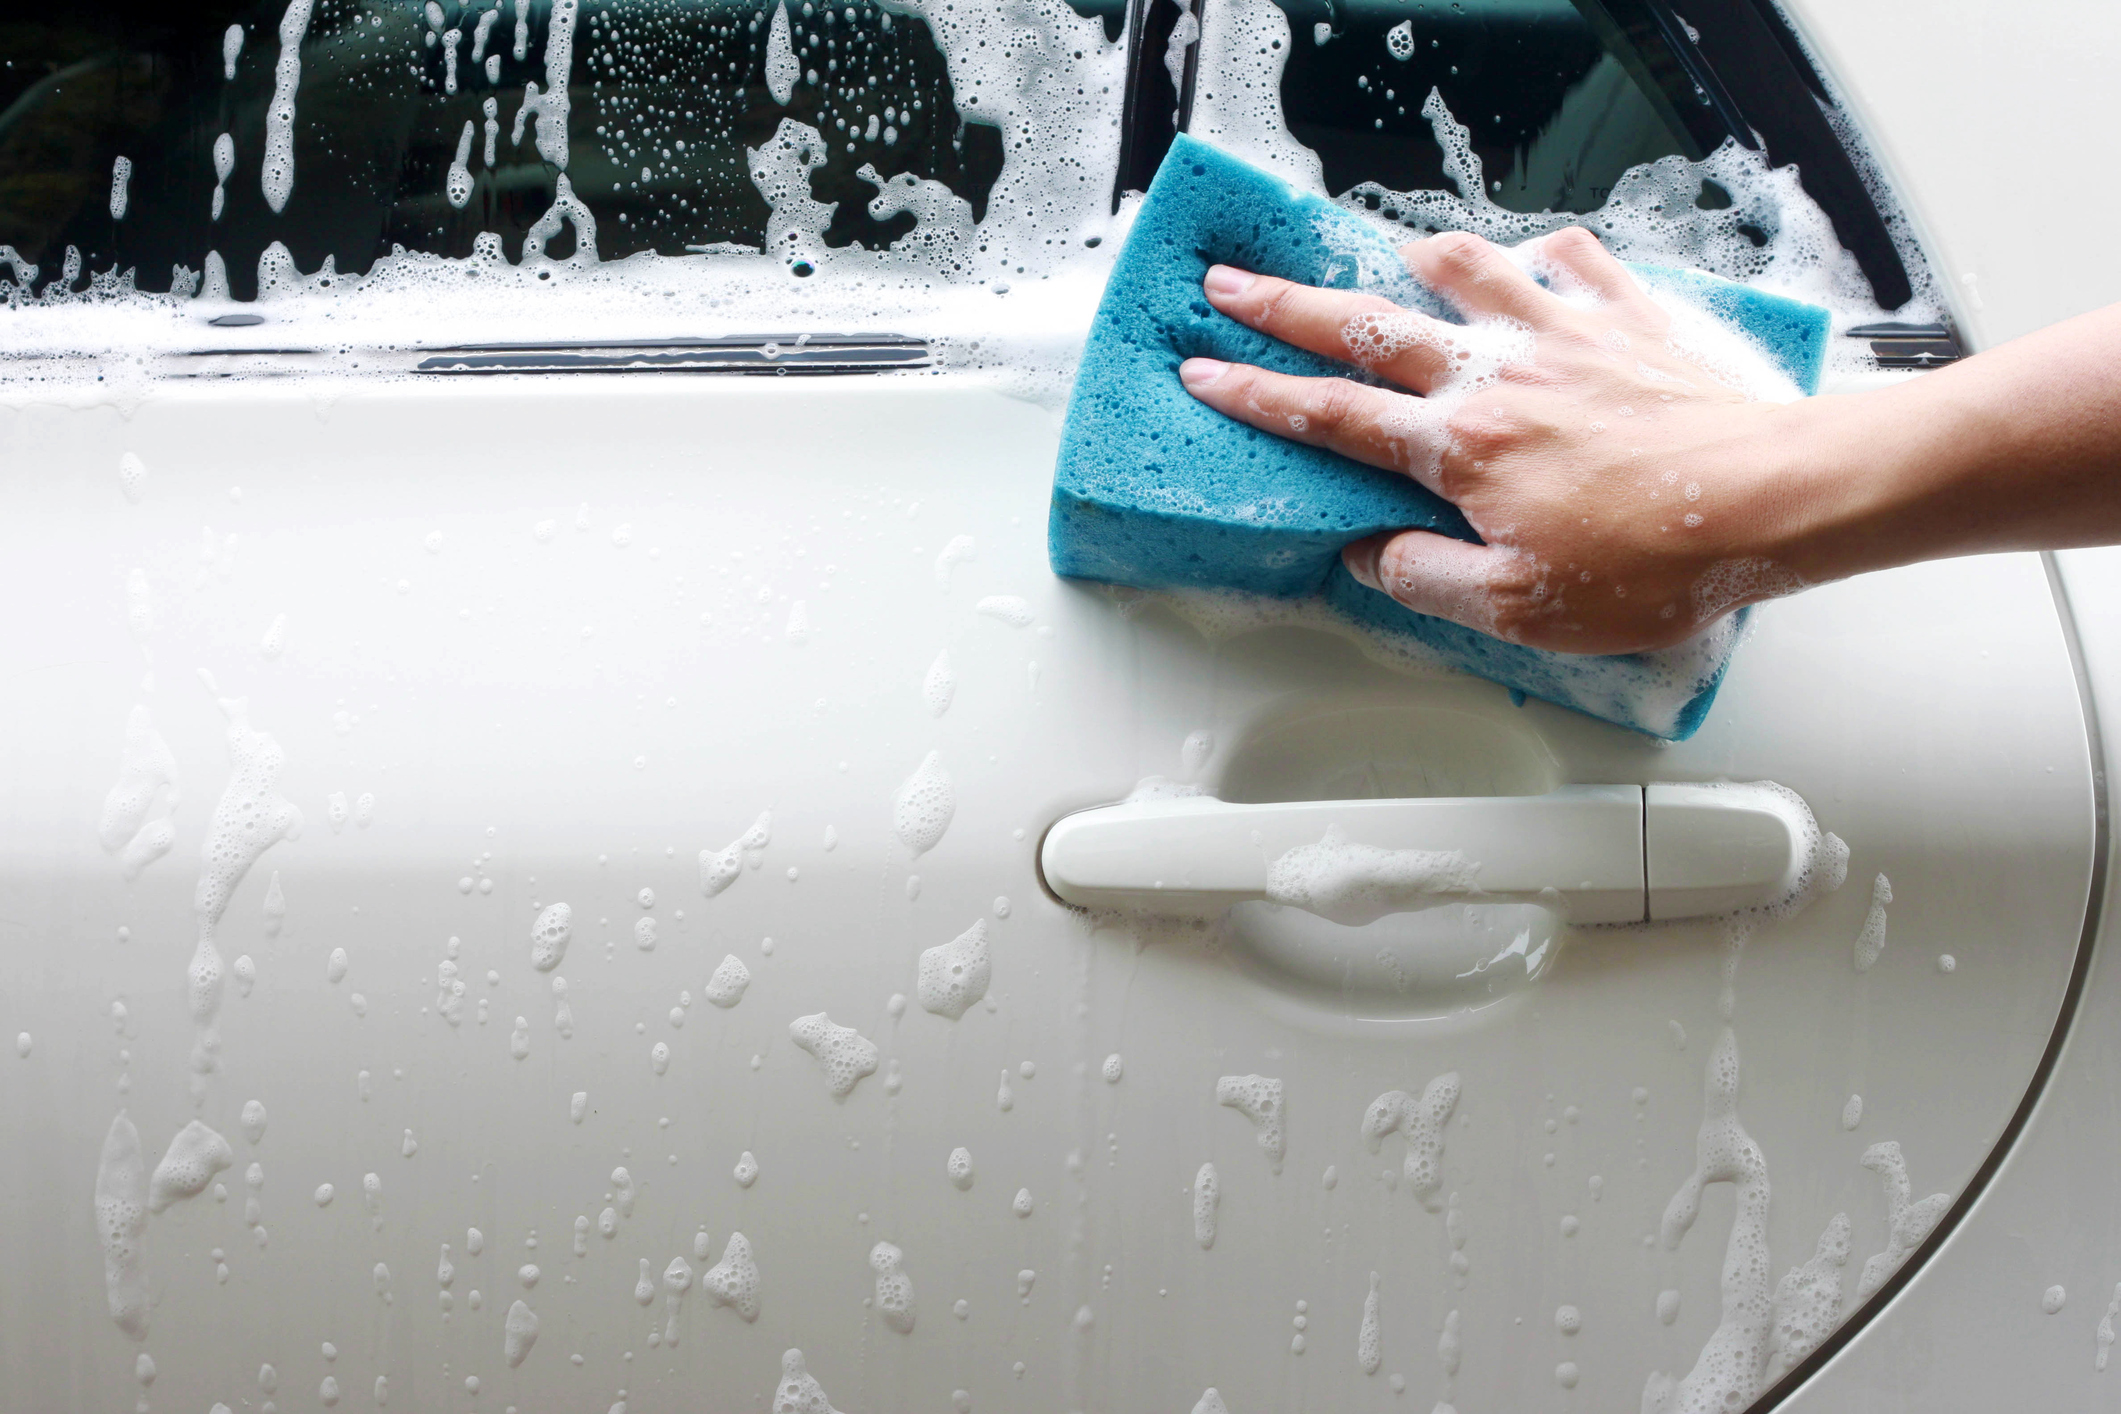 Pessoa passa esponja sobre lataria do carro para lavar o veículo com água e sabão